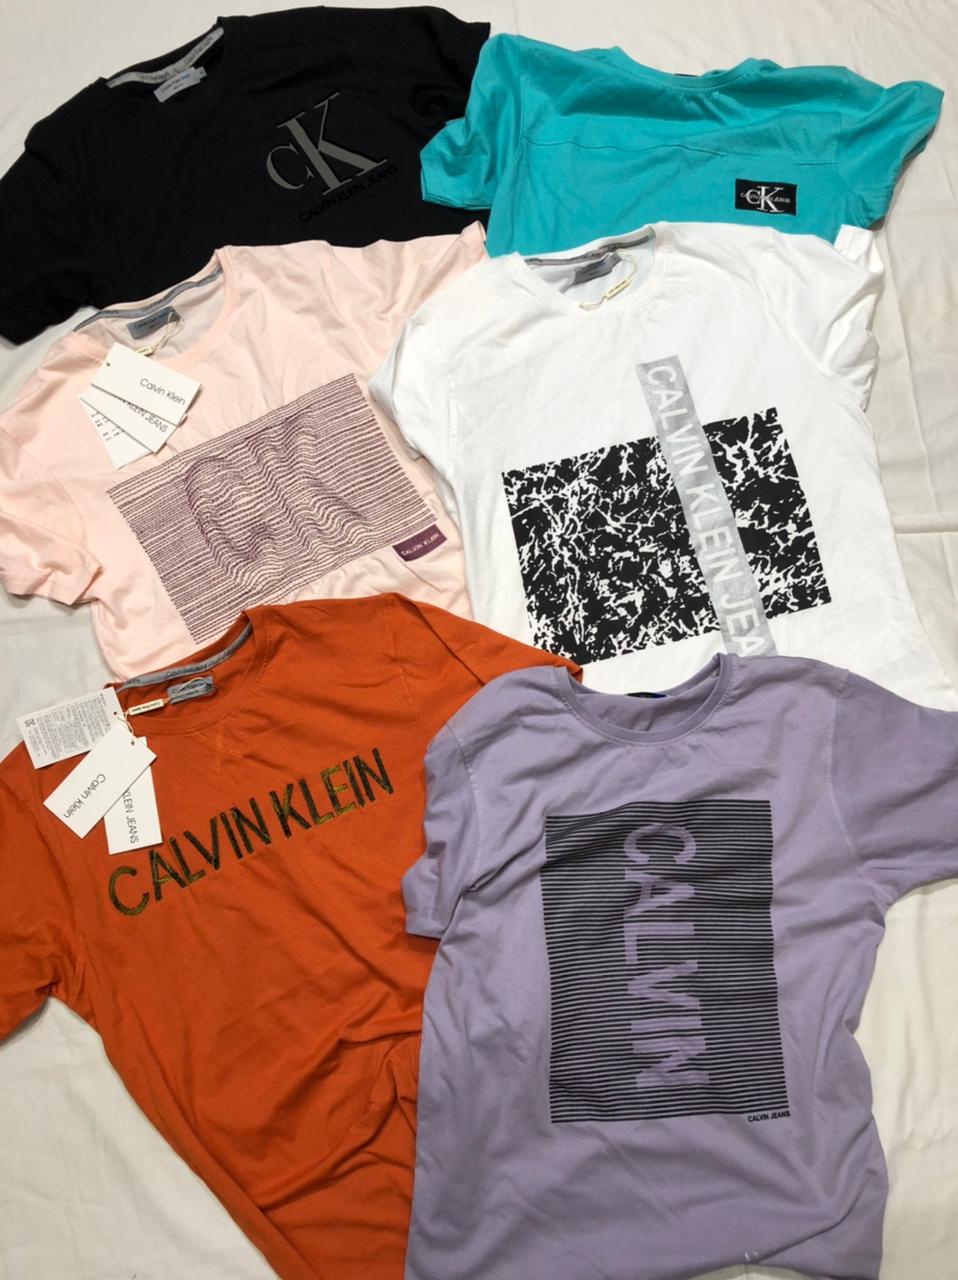 Calvin klein tshirts